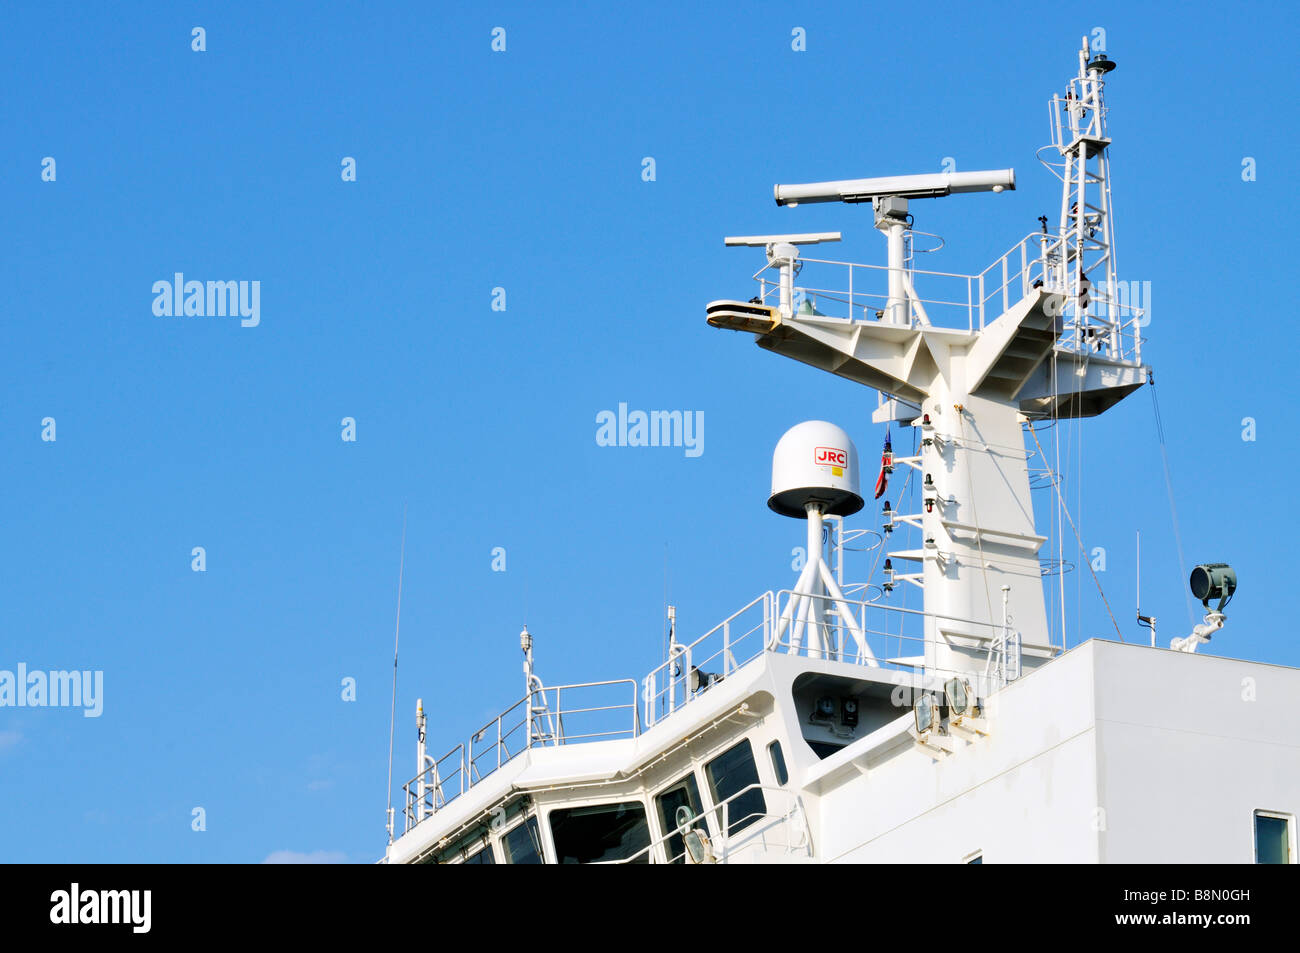 Schiffs-Elektronik im Außenbereich der Brücke mit Radar und "Satellitenkommunikation" Ausrüstung gegen [klaren blauen Himmel] Stockfoto